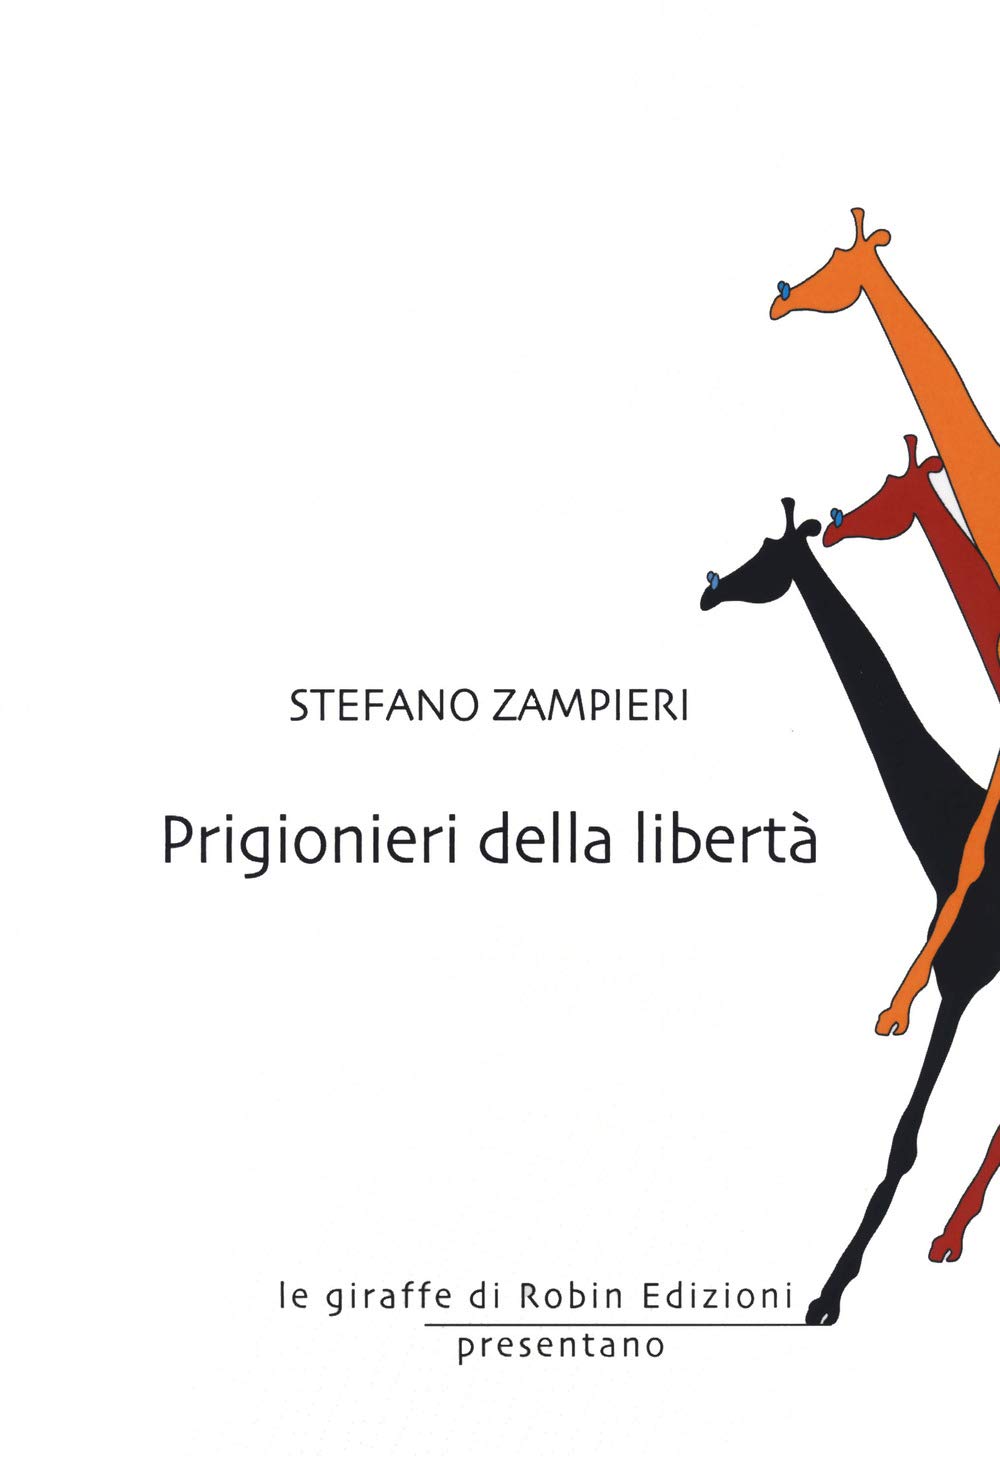 Recensione: “Prigionieri della libertà” di Stefano Zampieri.